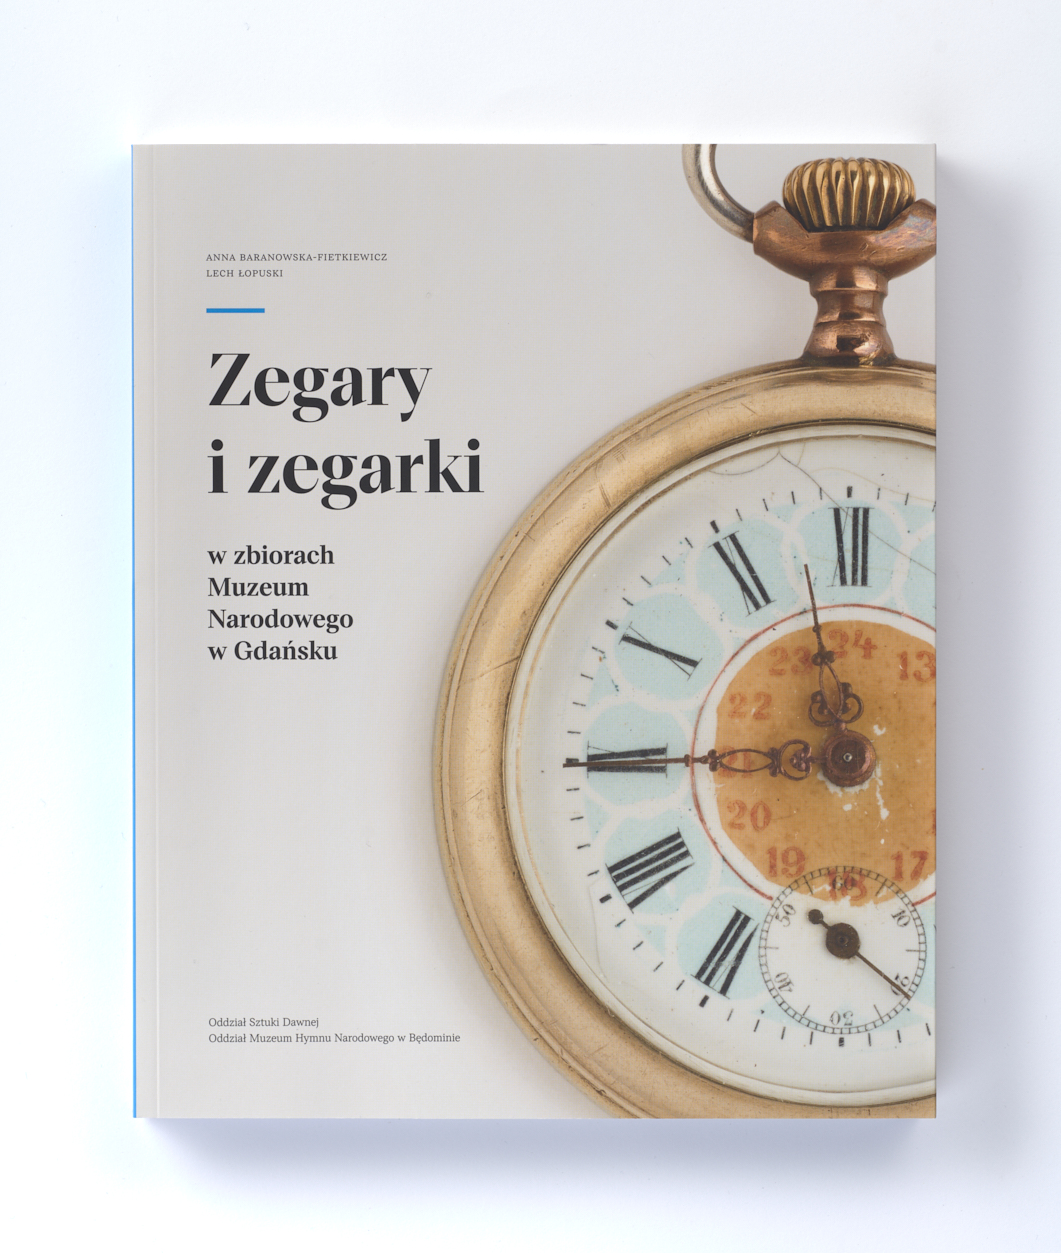 napis: Zegaty i zegarki w zbiorach Muzeum Narodowego w Gdańsku, obok okrągły zegarek kieszkonkowy